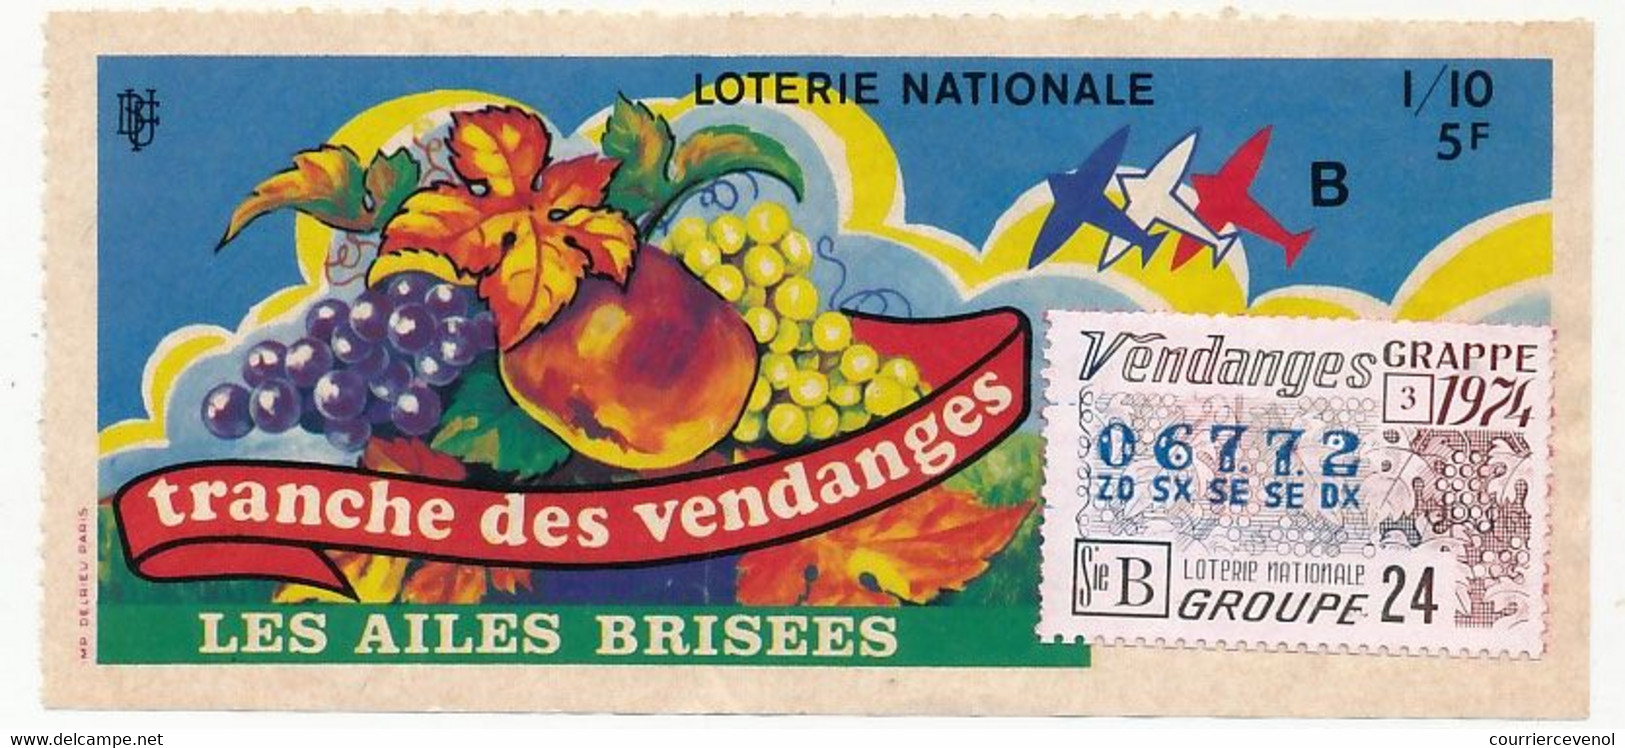 FRANCE - Loterie Nationale - 1/10ème - Les Ailes Brisées - Tranche Des Vendanges - 1974 - Billets De Loterie